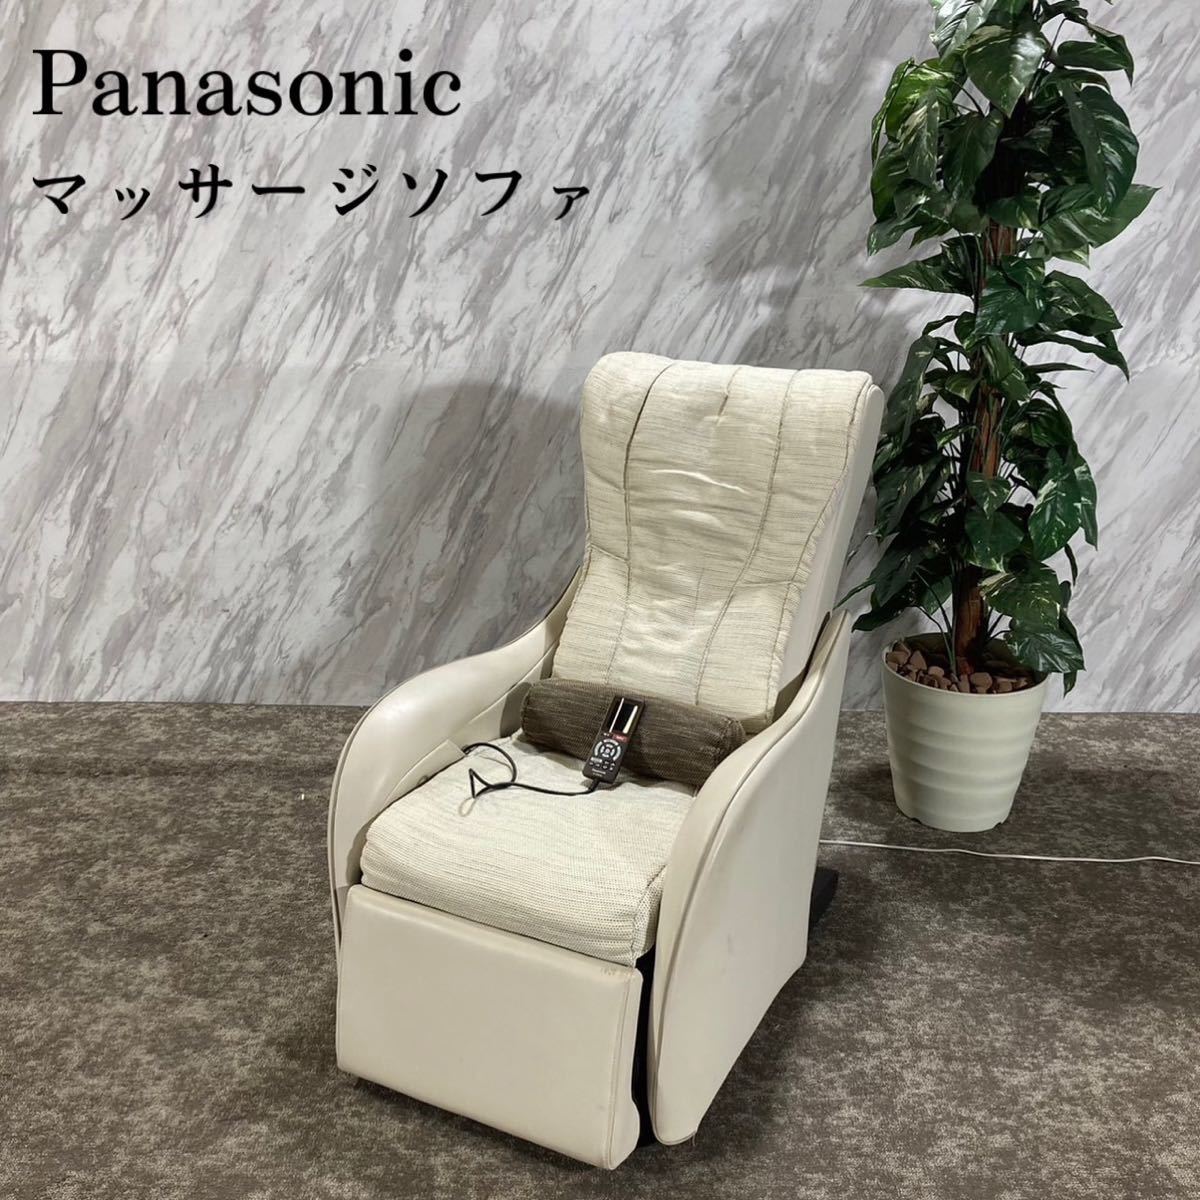 あなたにおすすめの商品 Panasonic マッサージソファ チェア EP-MP046